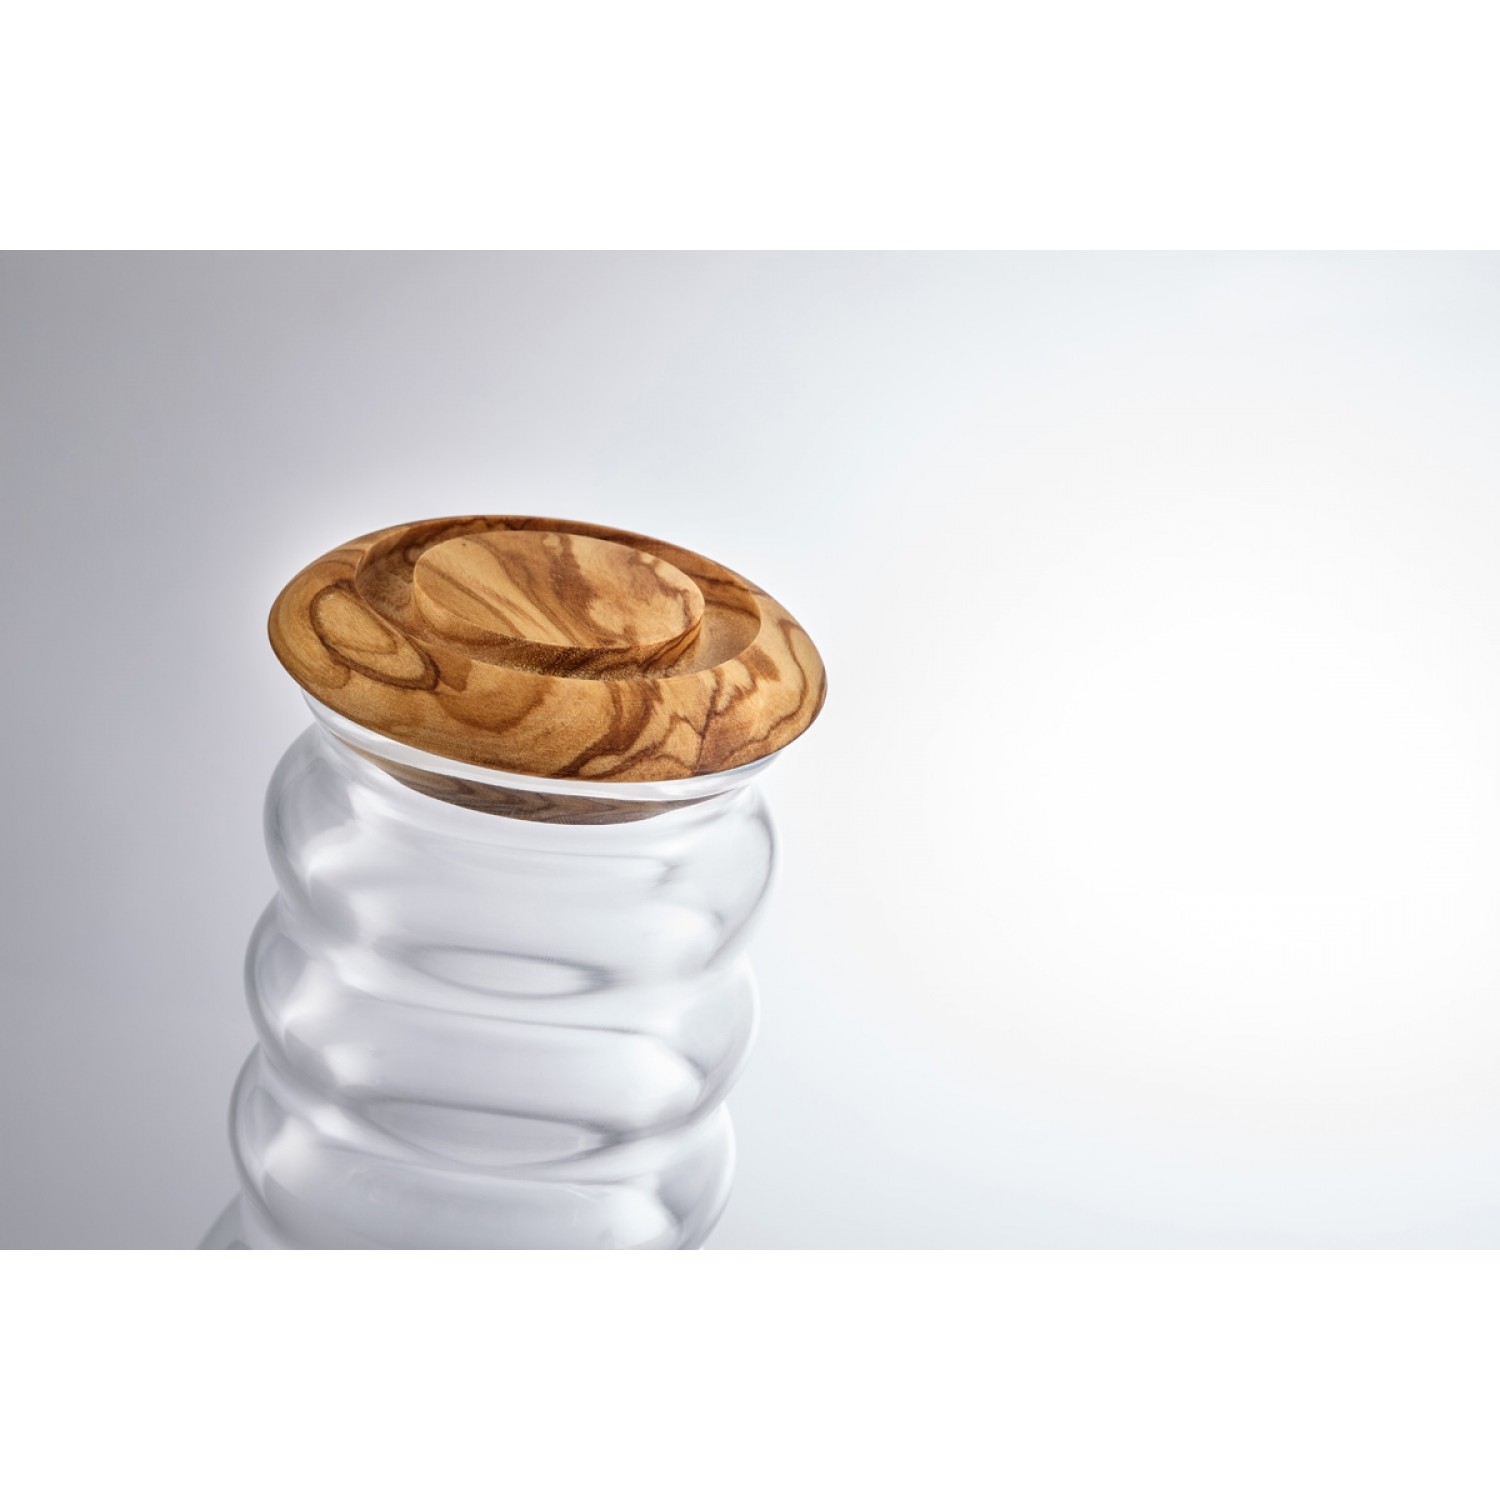 Nature’s Design olive wood lid for Pitcher Cadus 1.5 litre